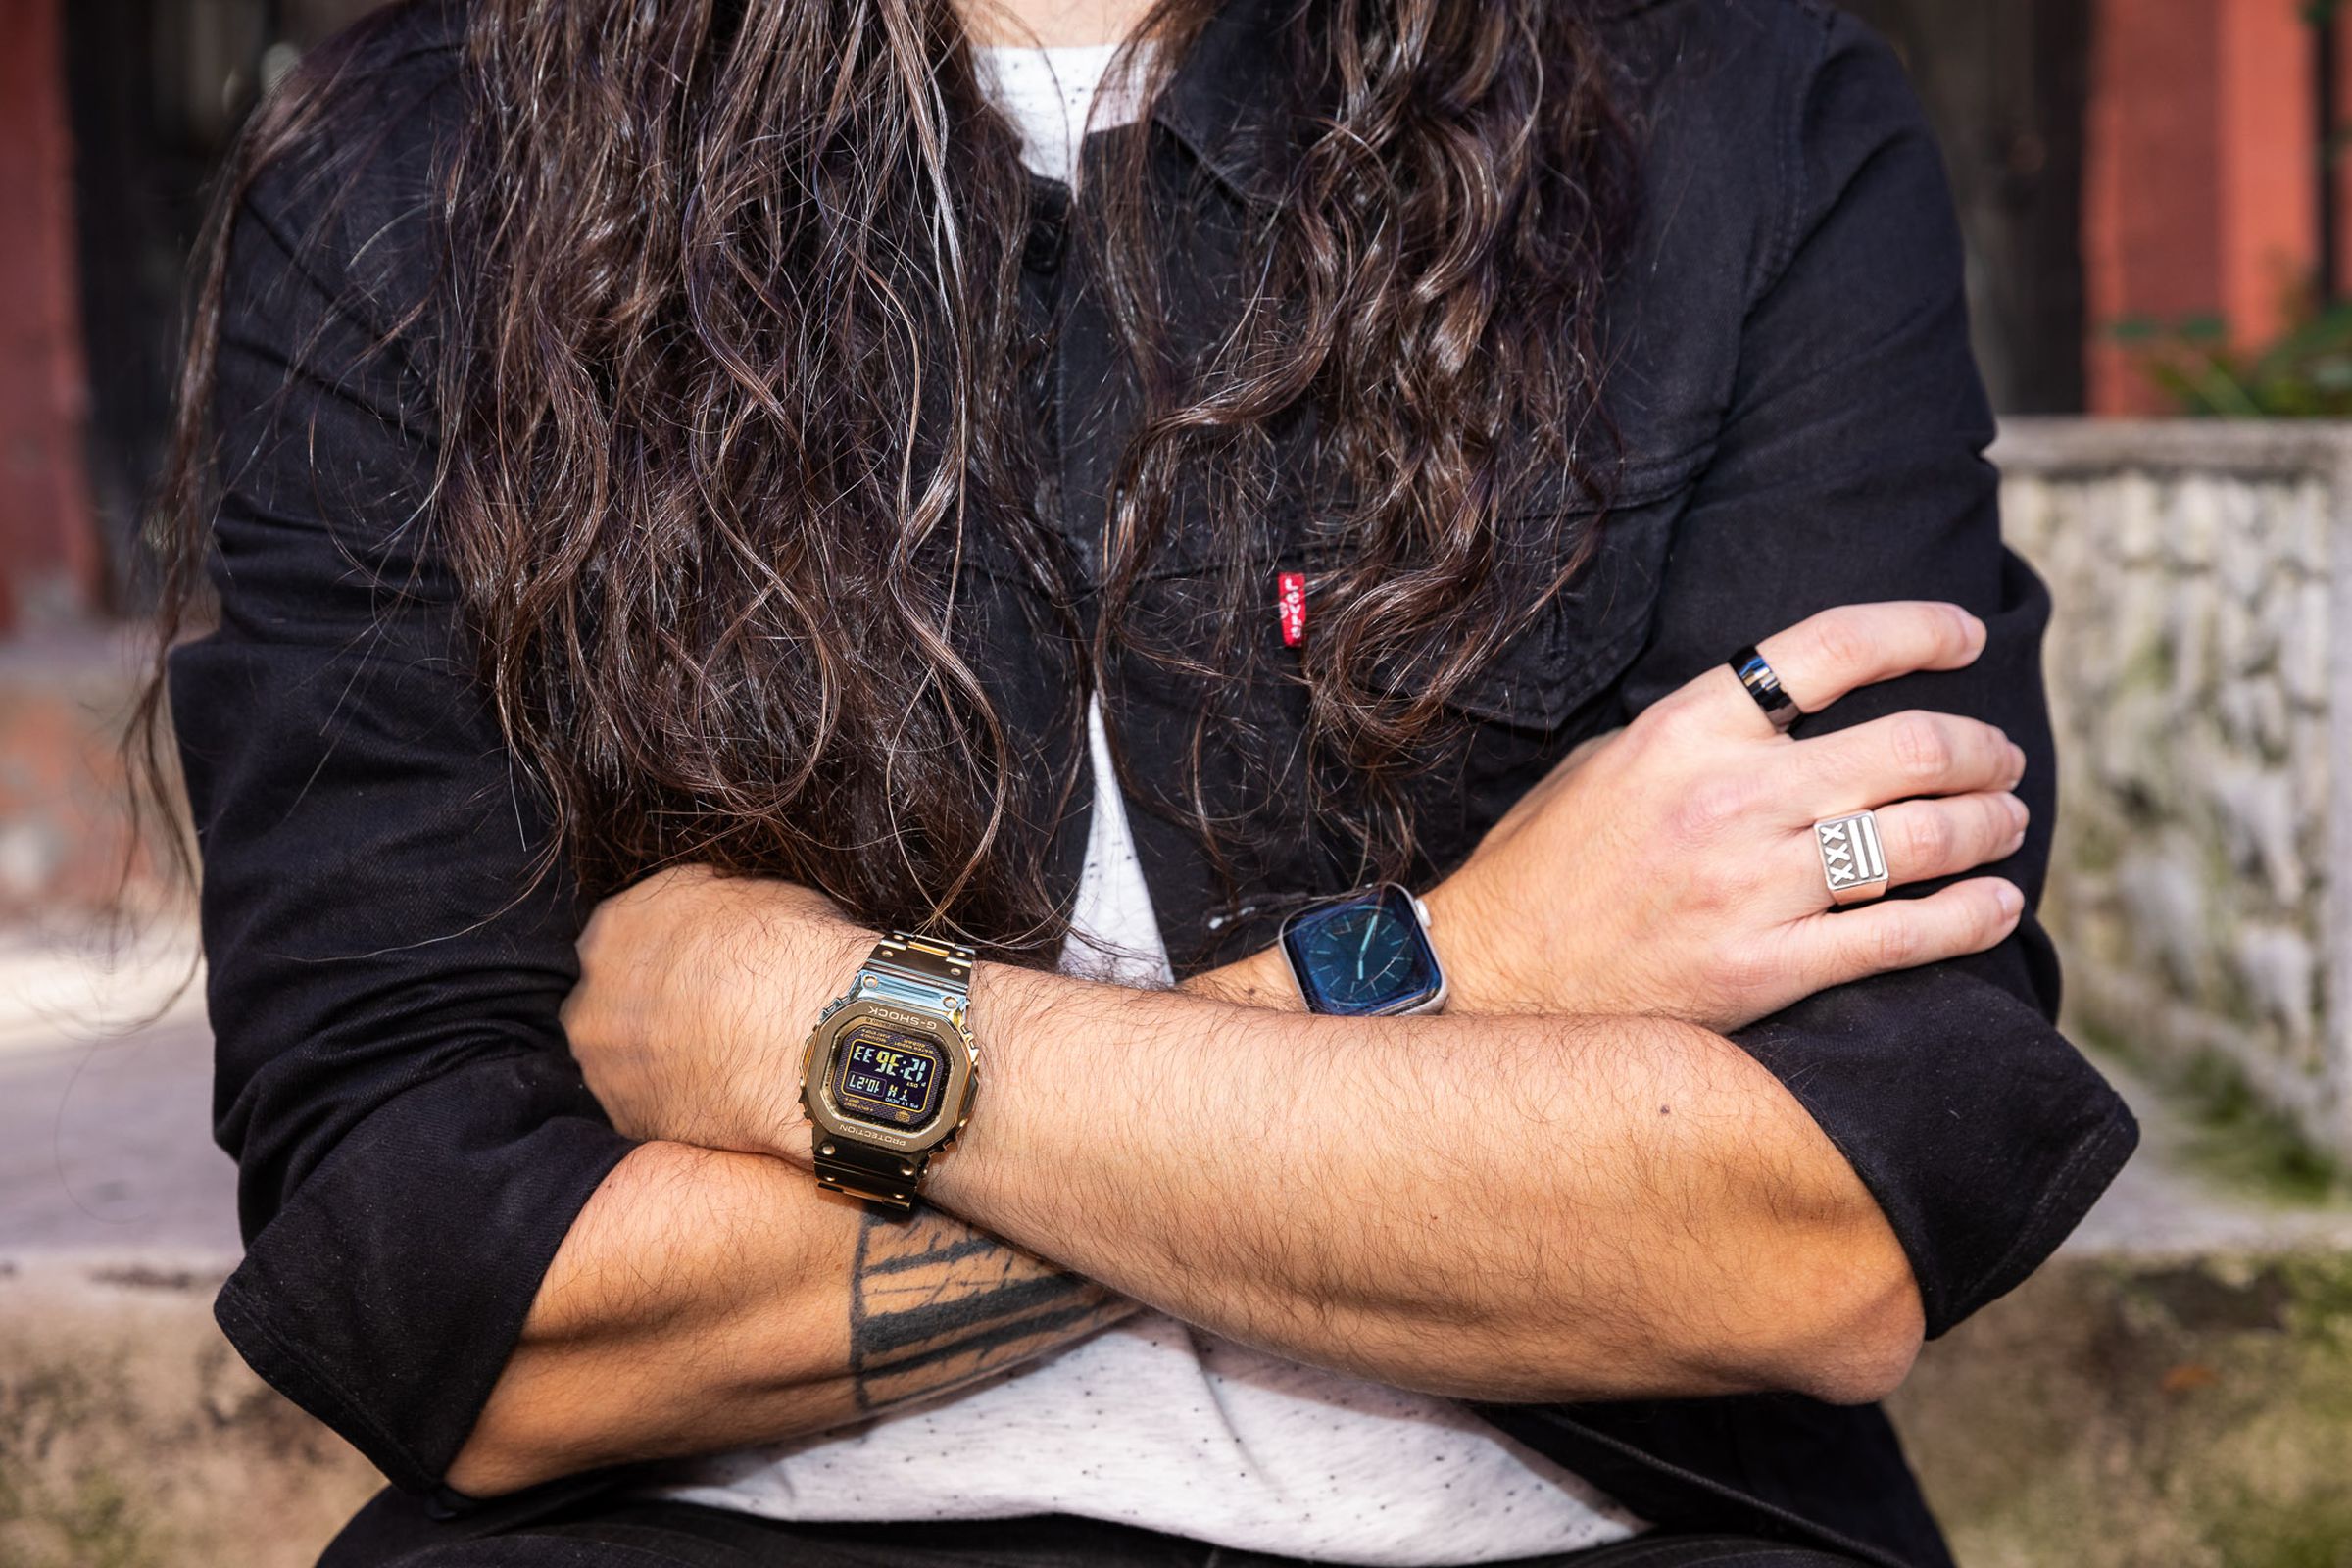 Con orologi unici come questo G-Shock interamente in metallo, si ottengono funzioni interessanti come un movimento a energia solare che non si trovano nella maggior parte degli smartwatch. Quindi perché non indossare e apprezzare entrambi?